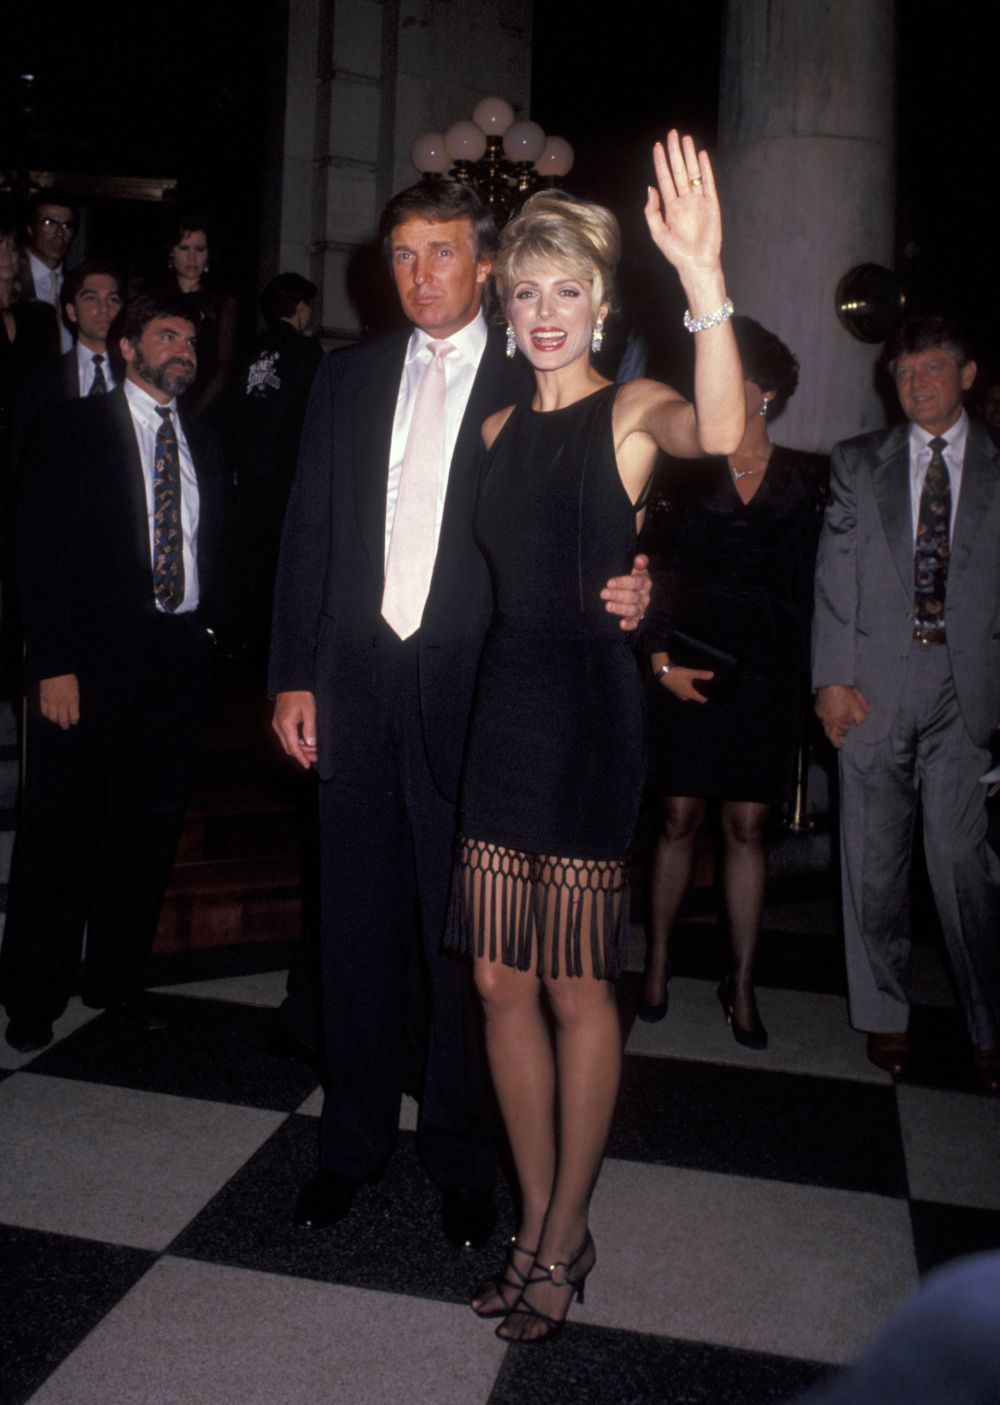 Fosta sotie a lui Donald Trump, aparitie sexy la un show de dans. Cat de bine arata mama lui Tiffany Trump, la 53 de ani